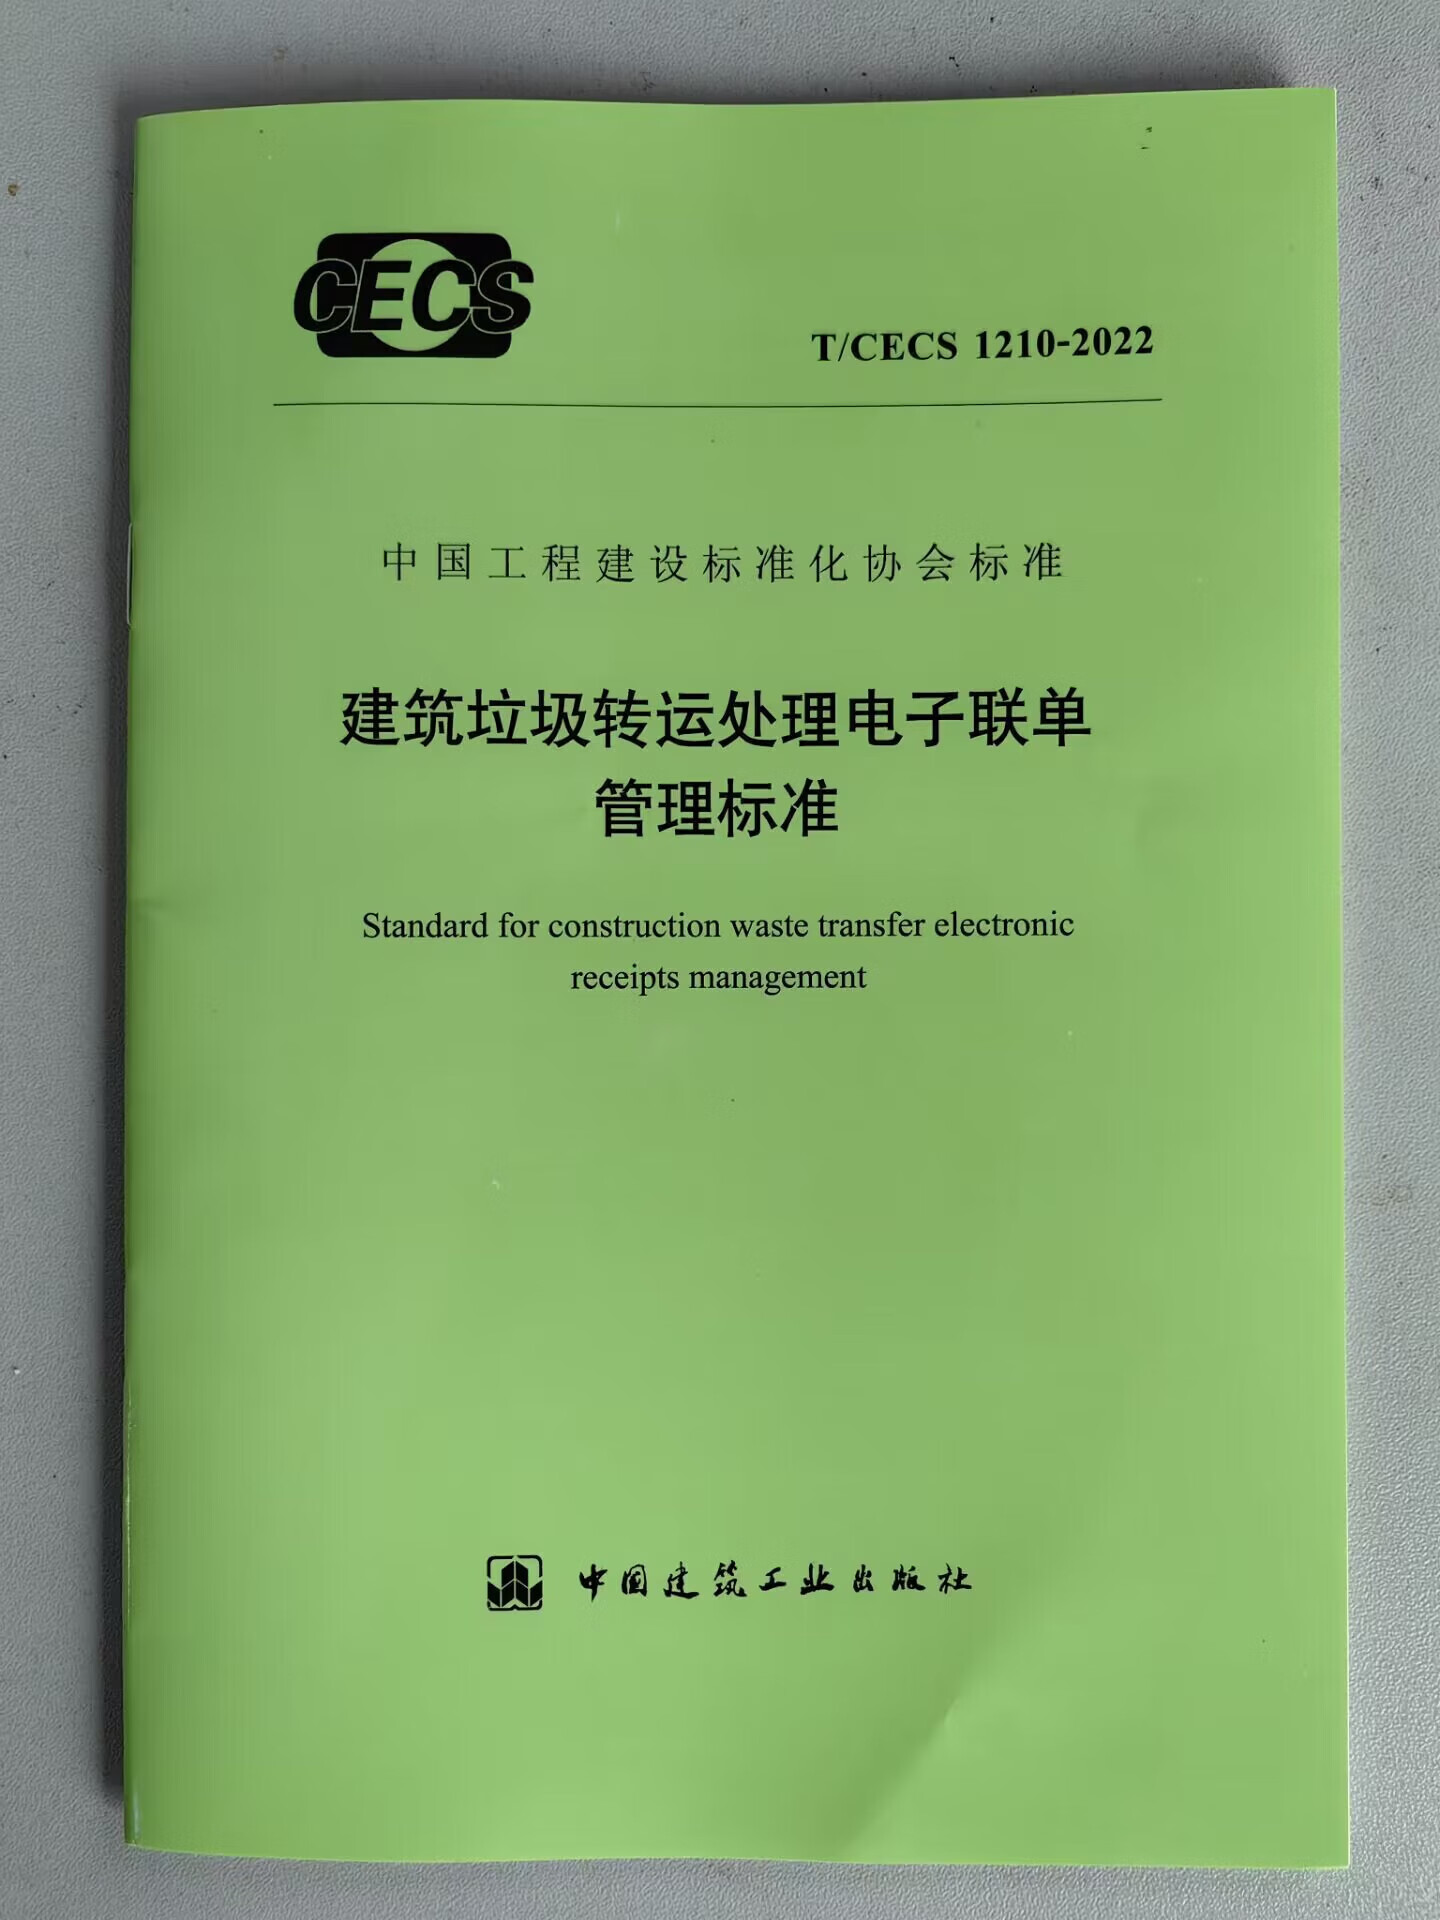 【建工社直发】T/CECS 1210-2022 建筑垃圾转运处理电子联单管理标准